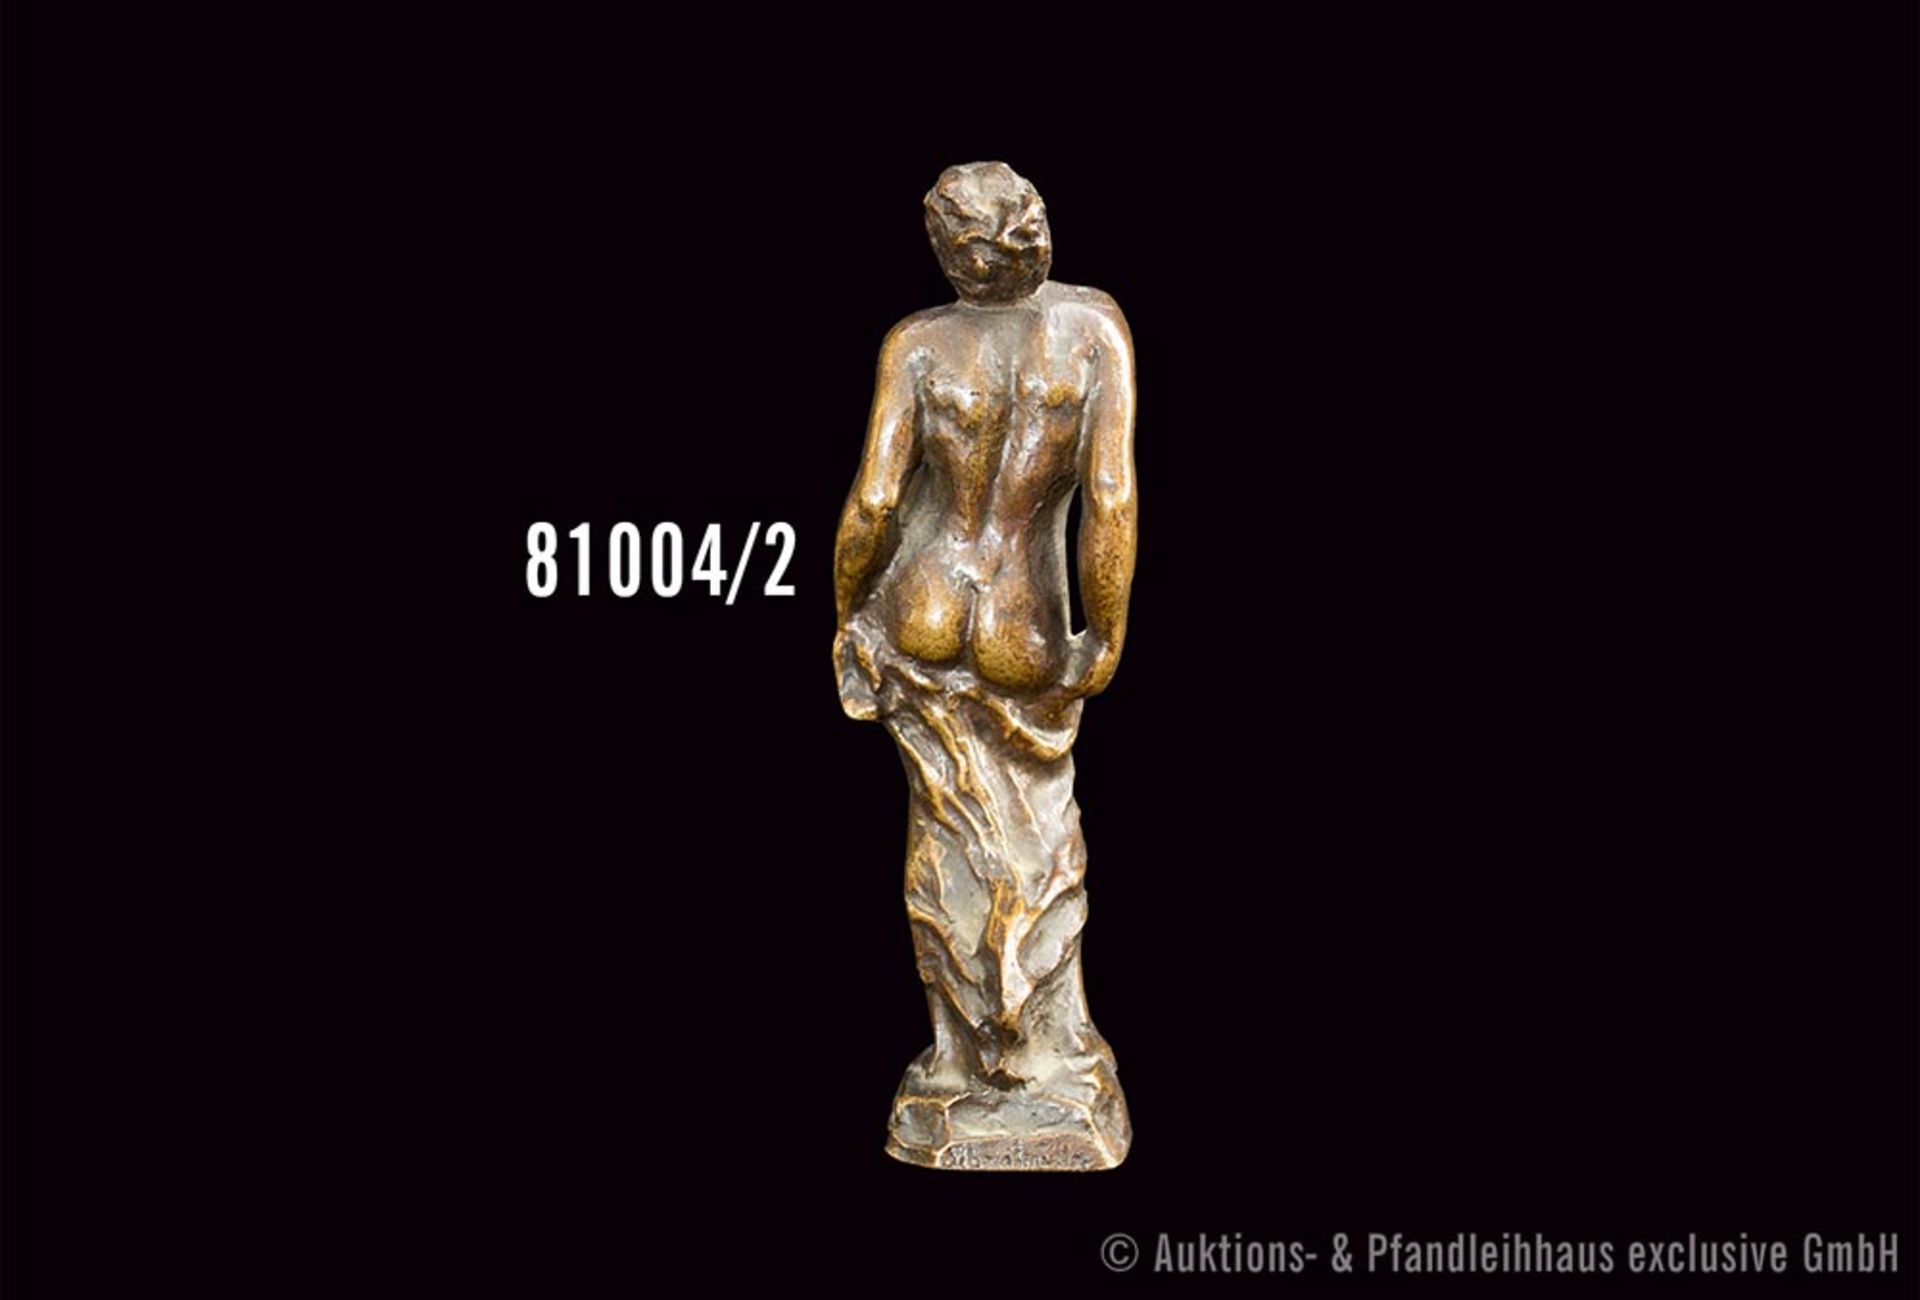 Schreitmüller, August (1871-1958) "Umbrandet", Bronze, goldbraun patiniert, weiblicher ... - Image 2 of 2